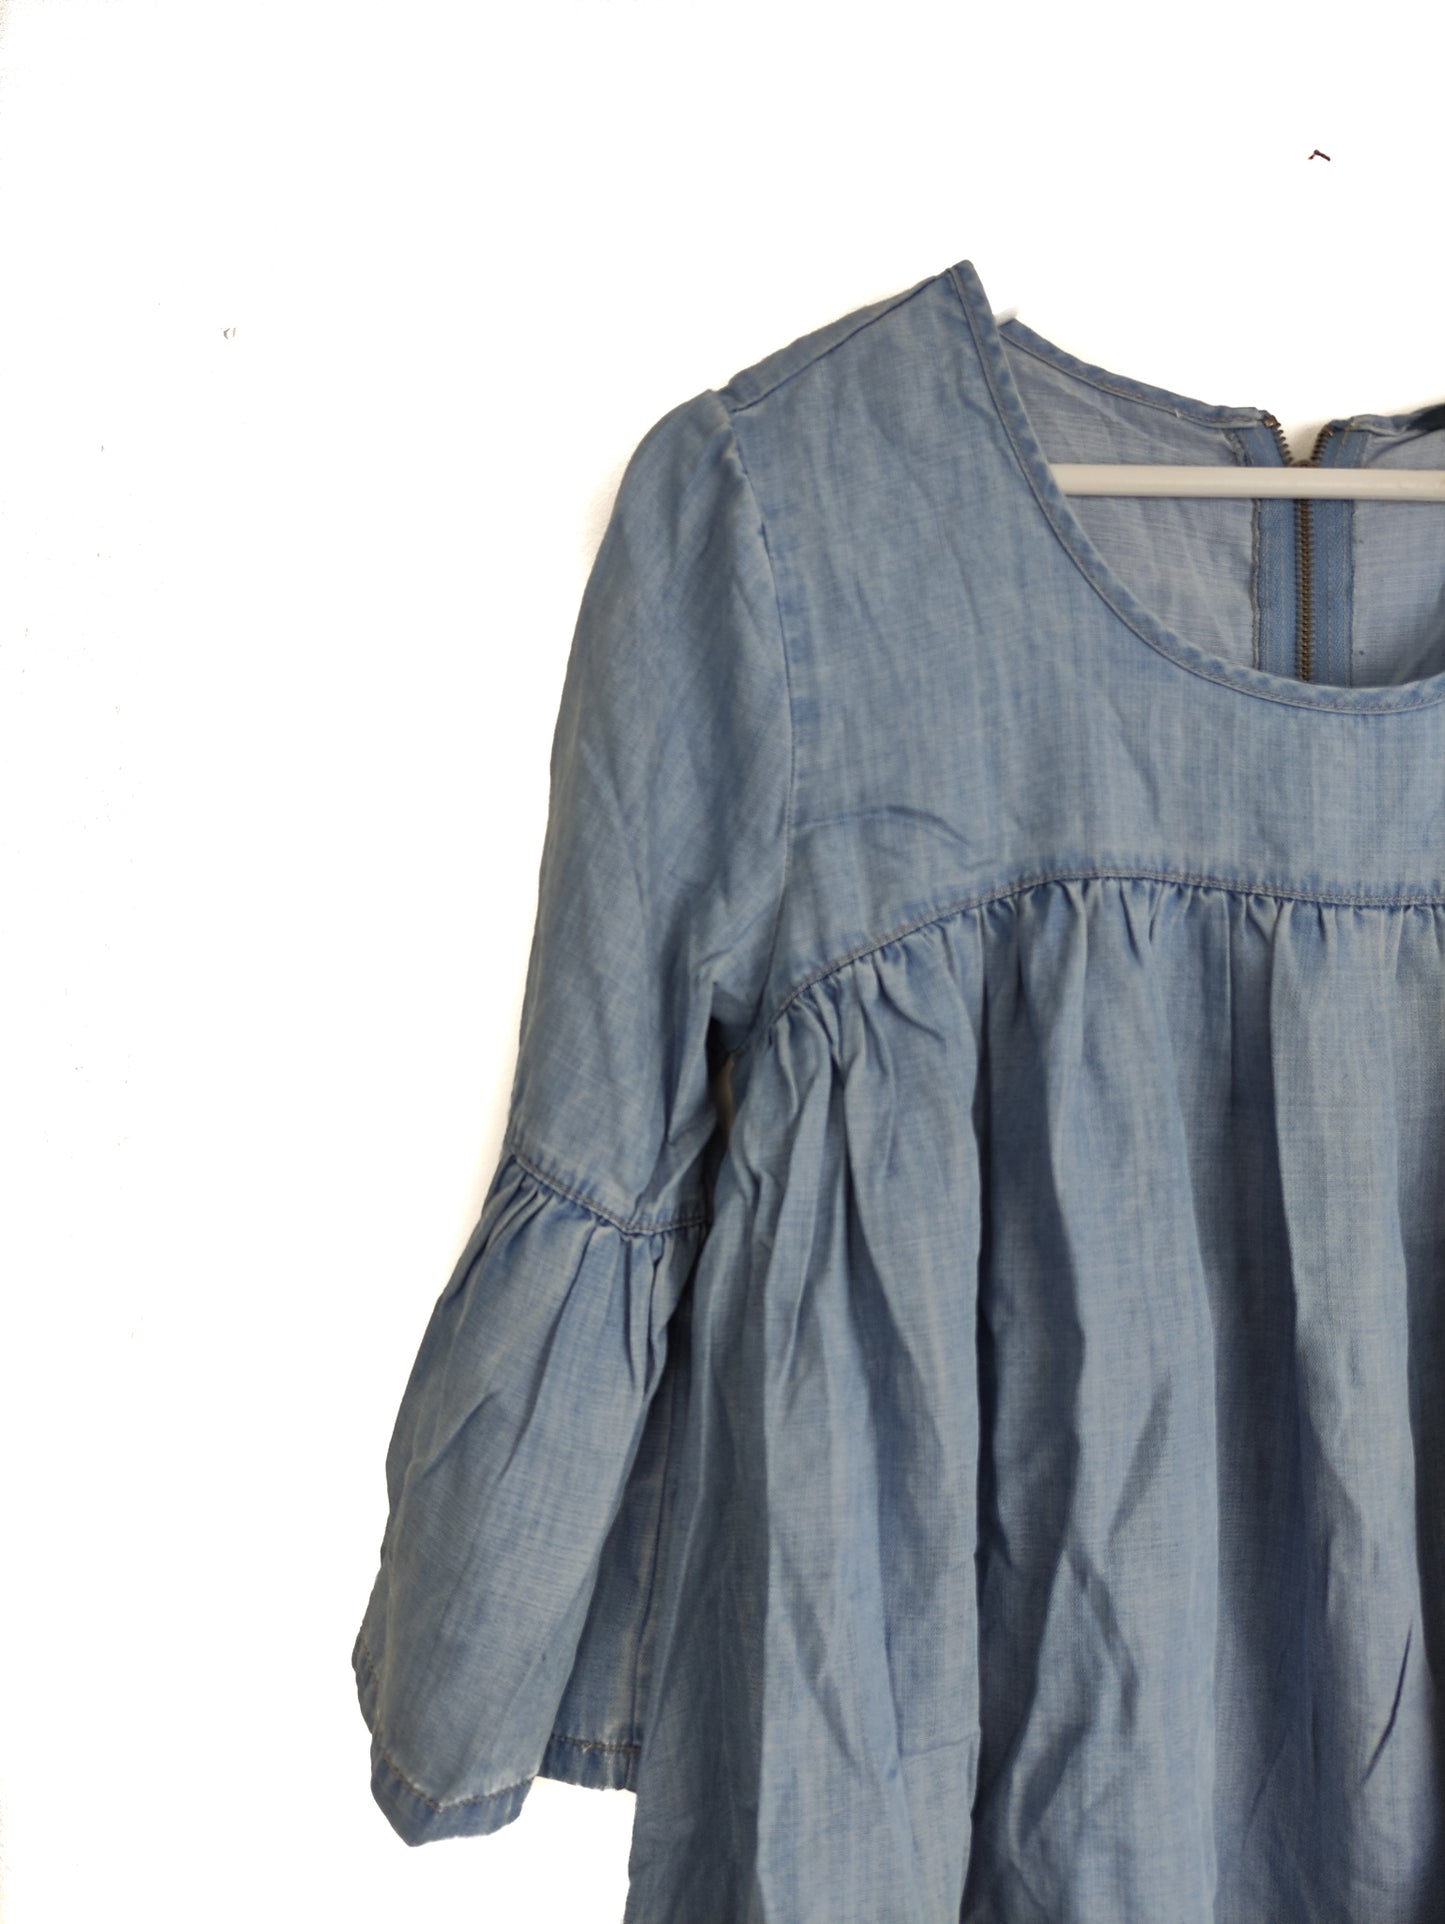 Γυναίκεια Μπλούζα Τζιν ONLY σε Σιέλ Χρώμα (Medium)